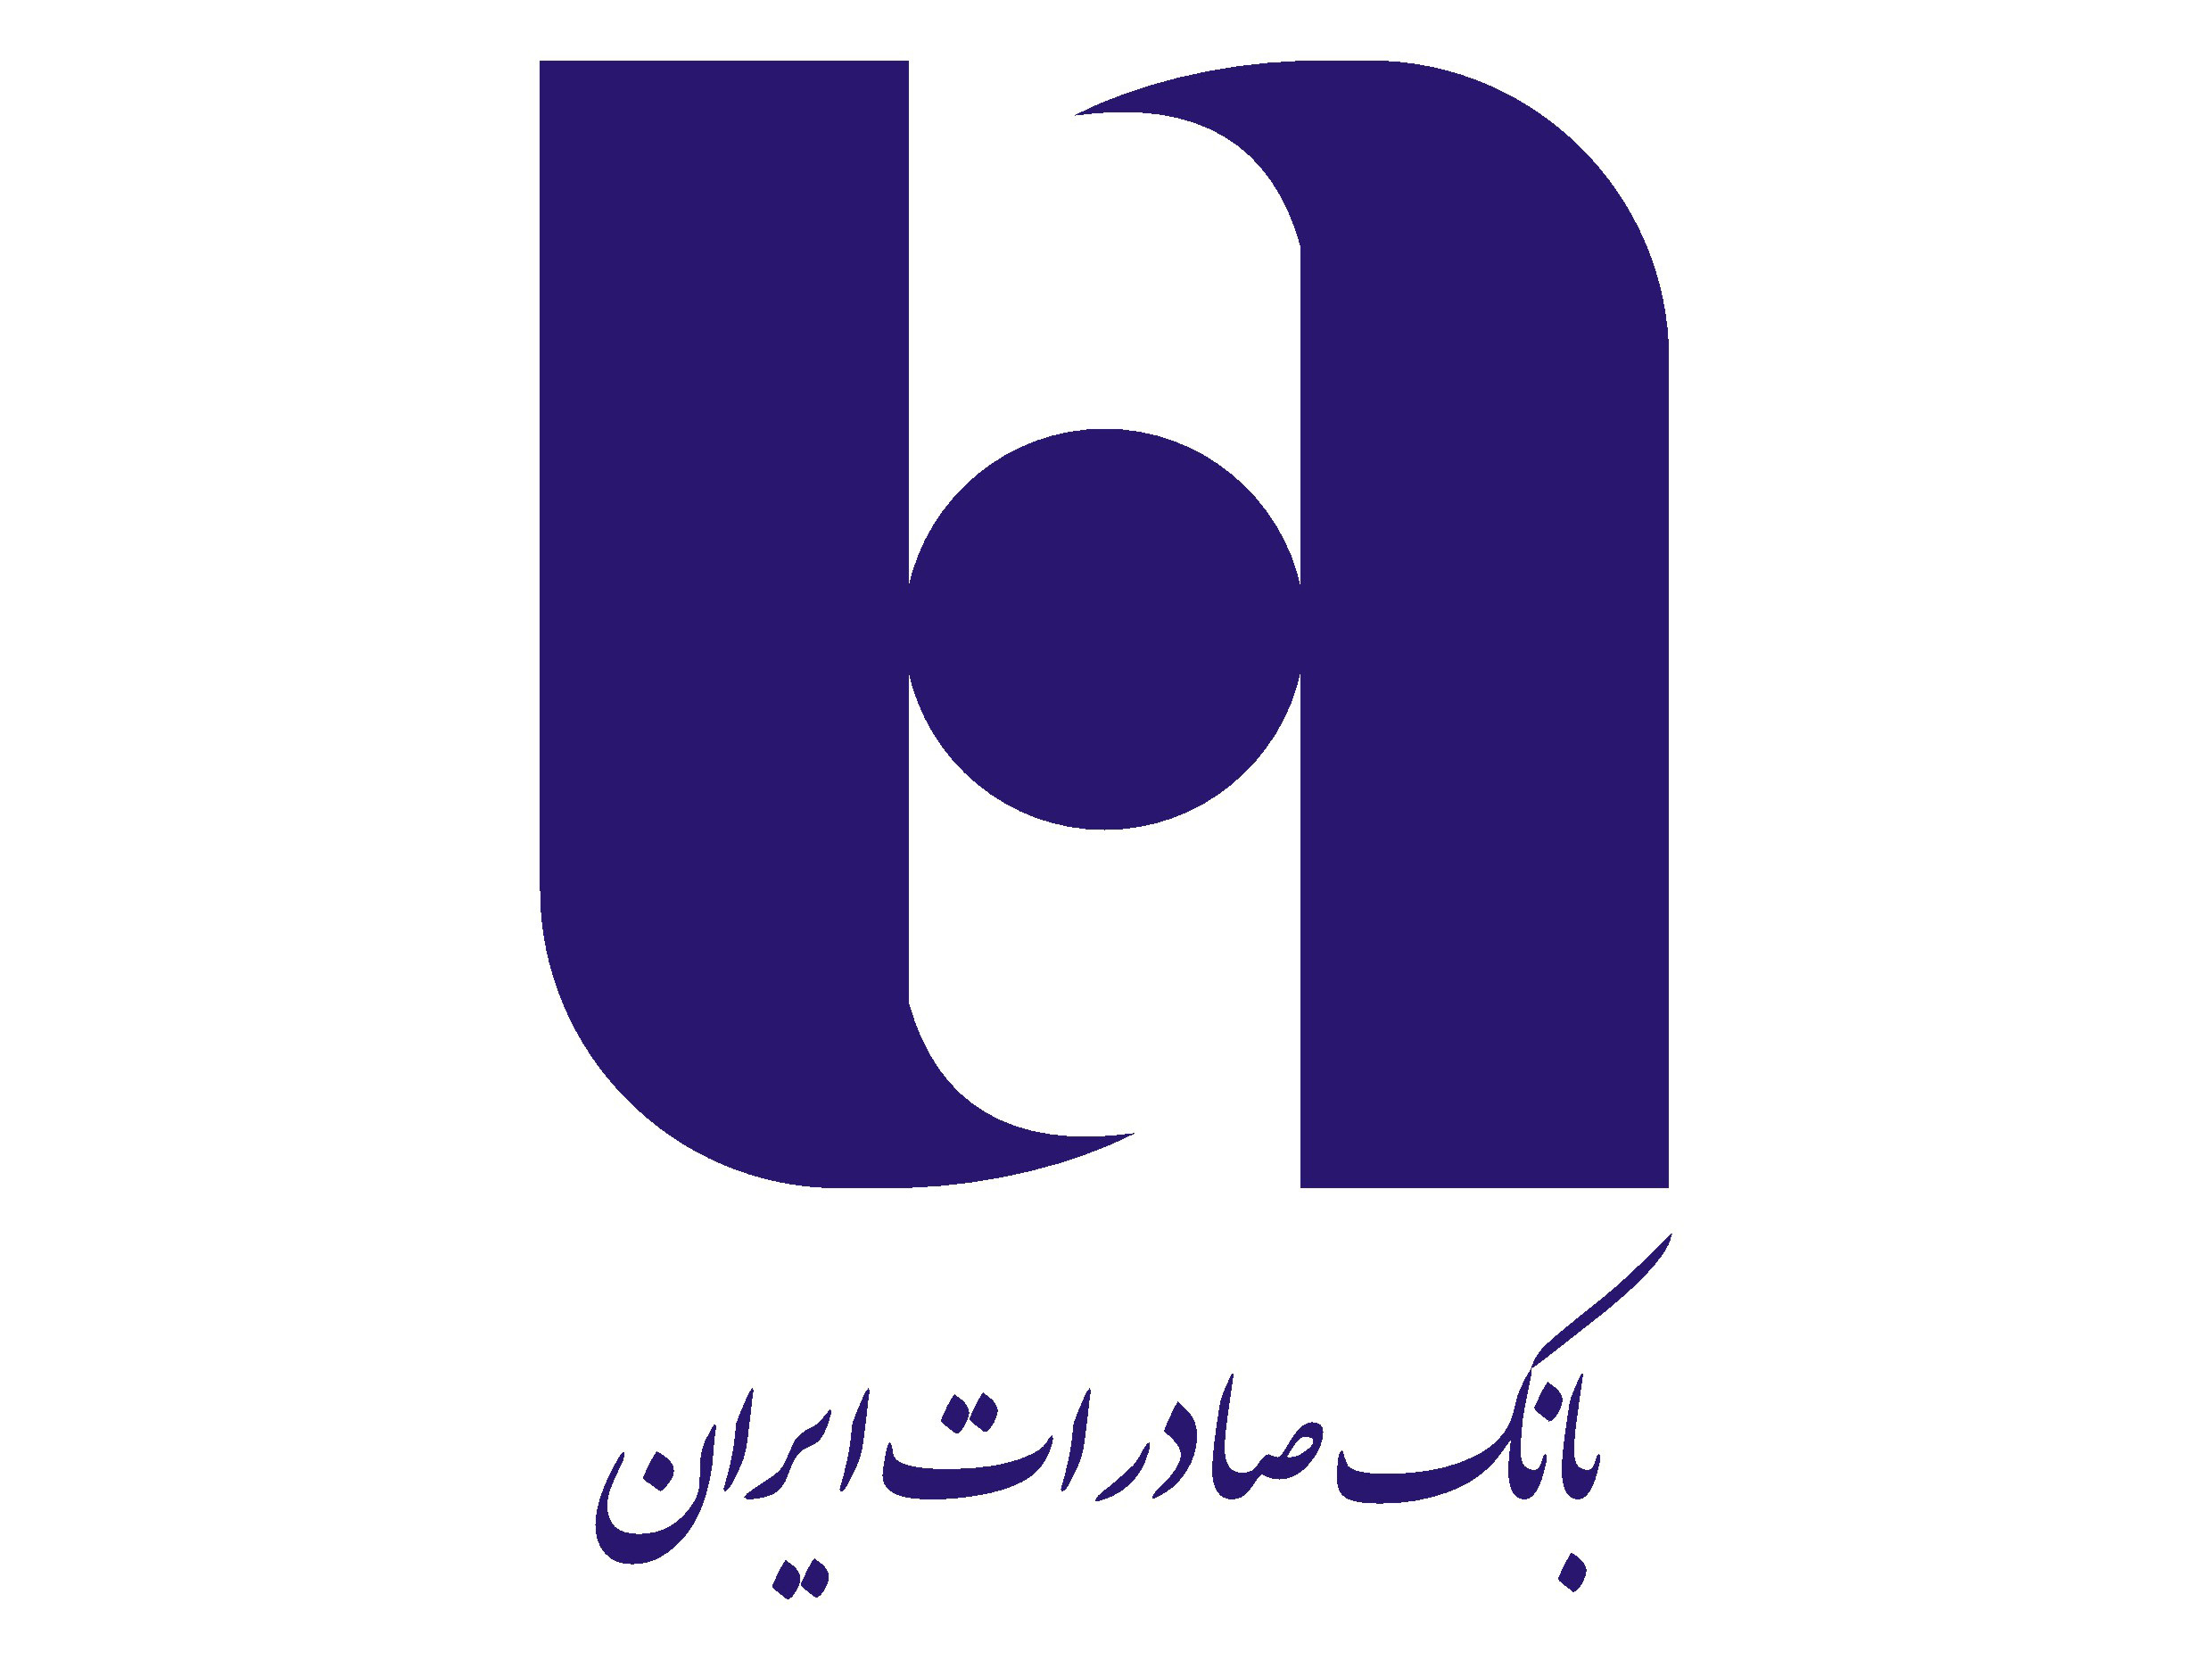 لوگوی بانک صادرات ایران با استفاده از ترکیبی از لوگوتایپ و تصویر یک کره زمین برای طراحی لوگو استفاده کرده است.